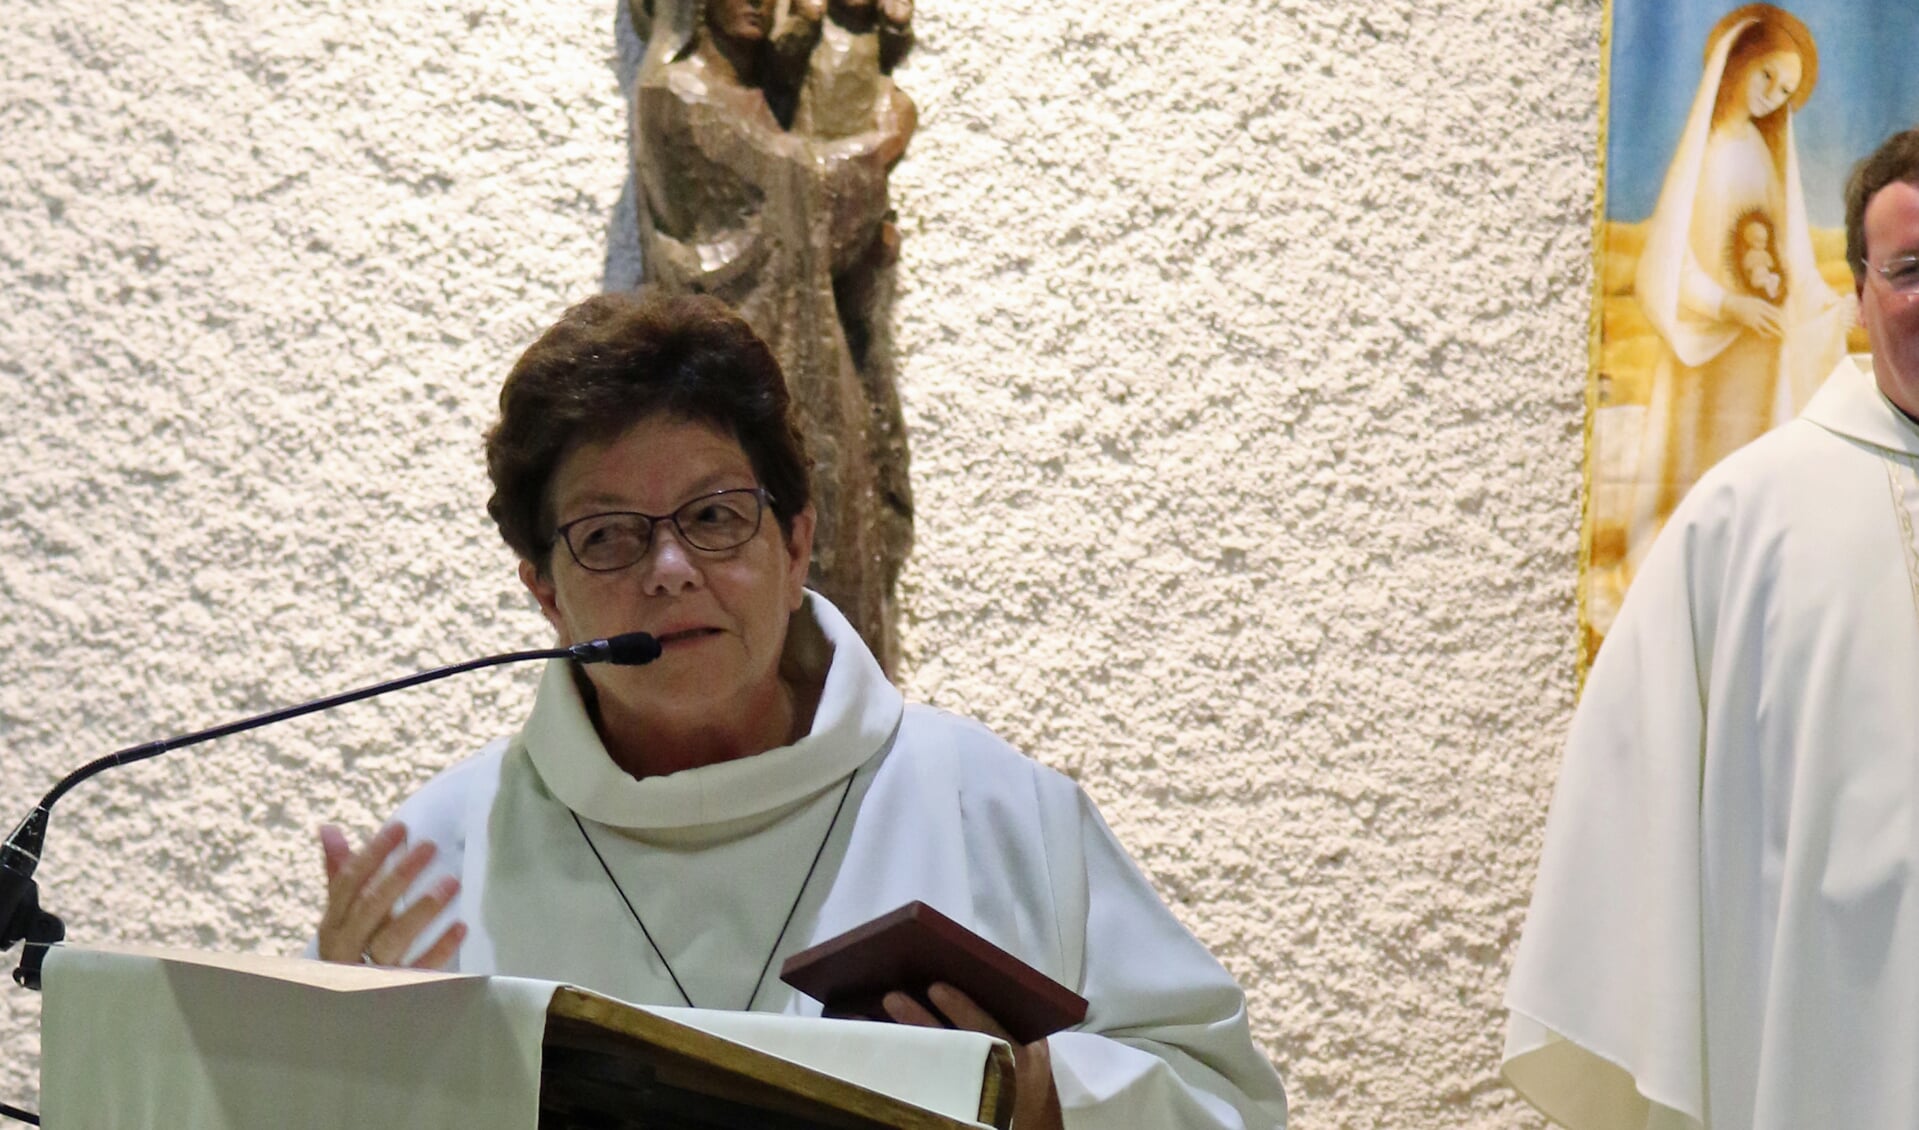 Mevrouw Riekje Rijk spreekt dankwoord uit - in haar hand heeft zij het zojuist ontvangen ereteken van de Heiligdommen van Lourdes. Foto: PR